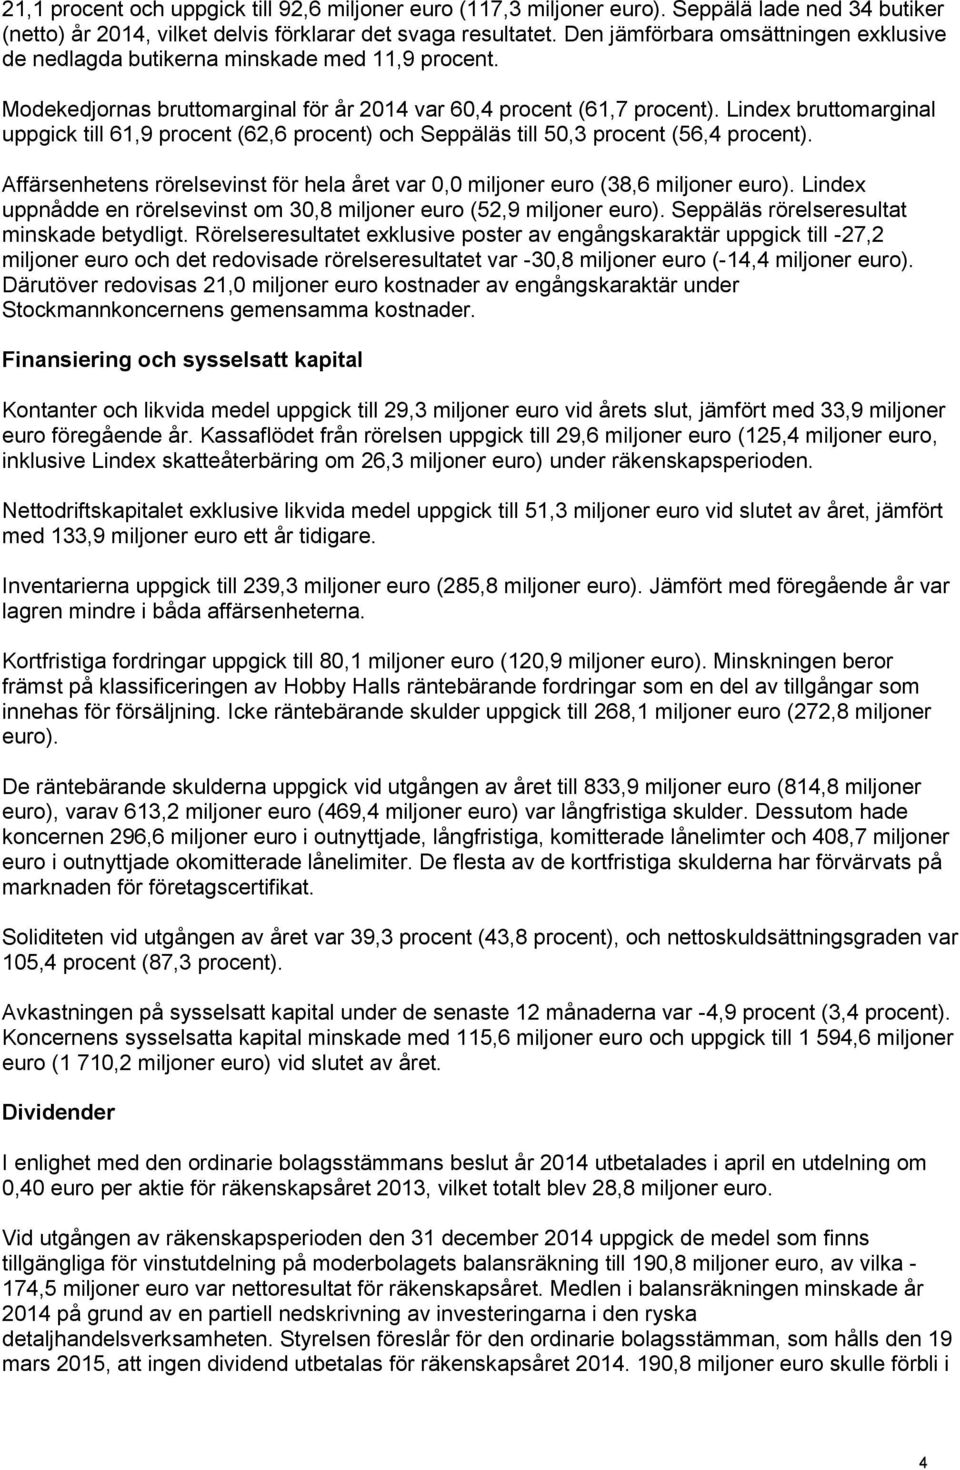 Lindex bruttomarginal uppgick till 61,9 procent (62,6 procent) och Seppäläs till 50,3 procent (56,4 procent). Affärsenhetens rörelsevinst för hela året var 0,0 miljoner euro (38,6 miljoner euro).